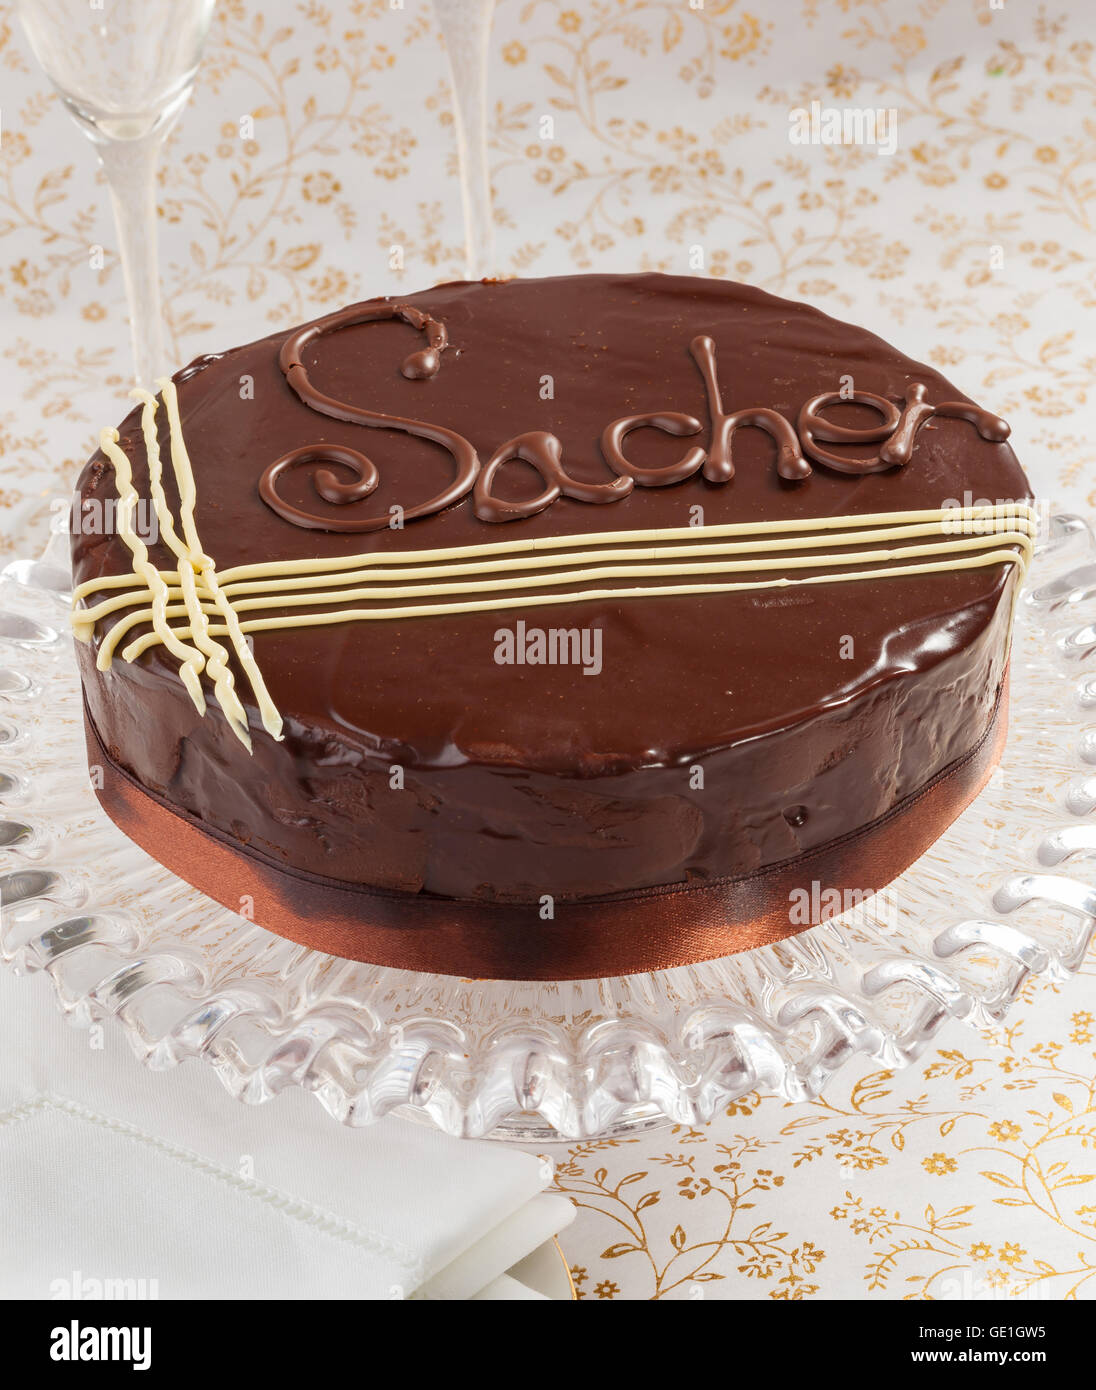 Sacher Torte faits maison, un gâteau au chocolat et cerises Banque D'Images